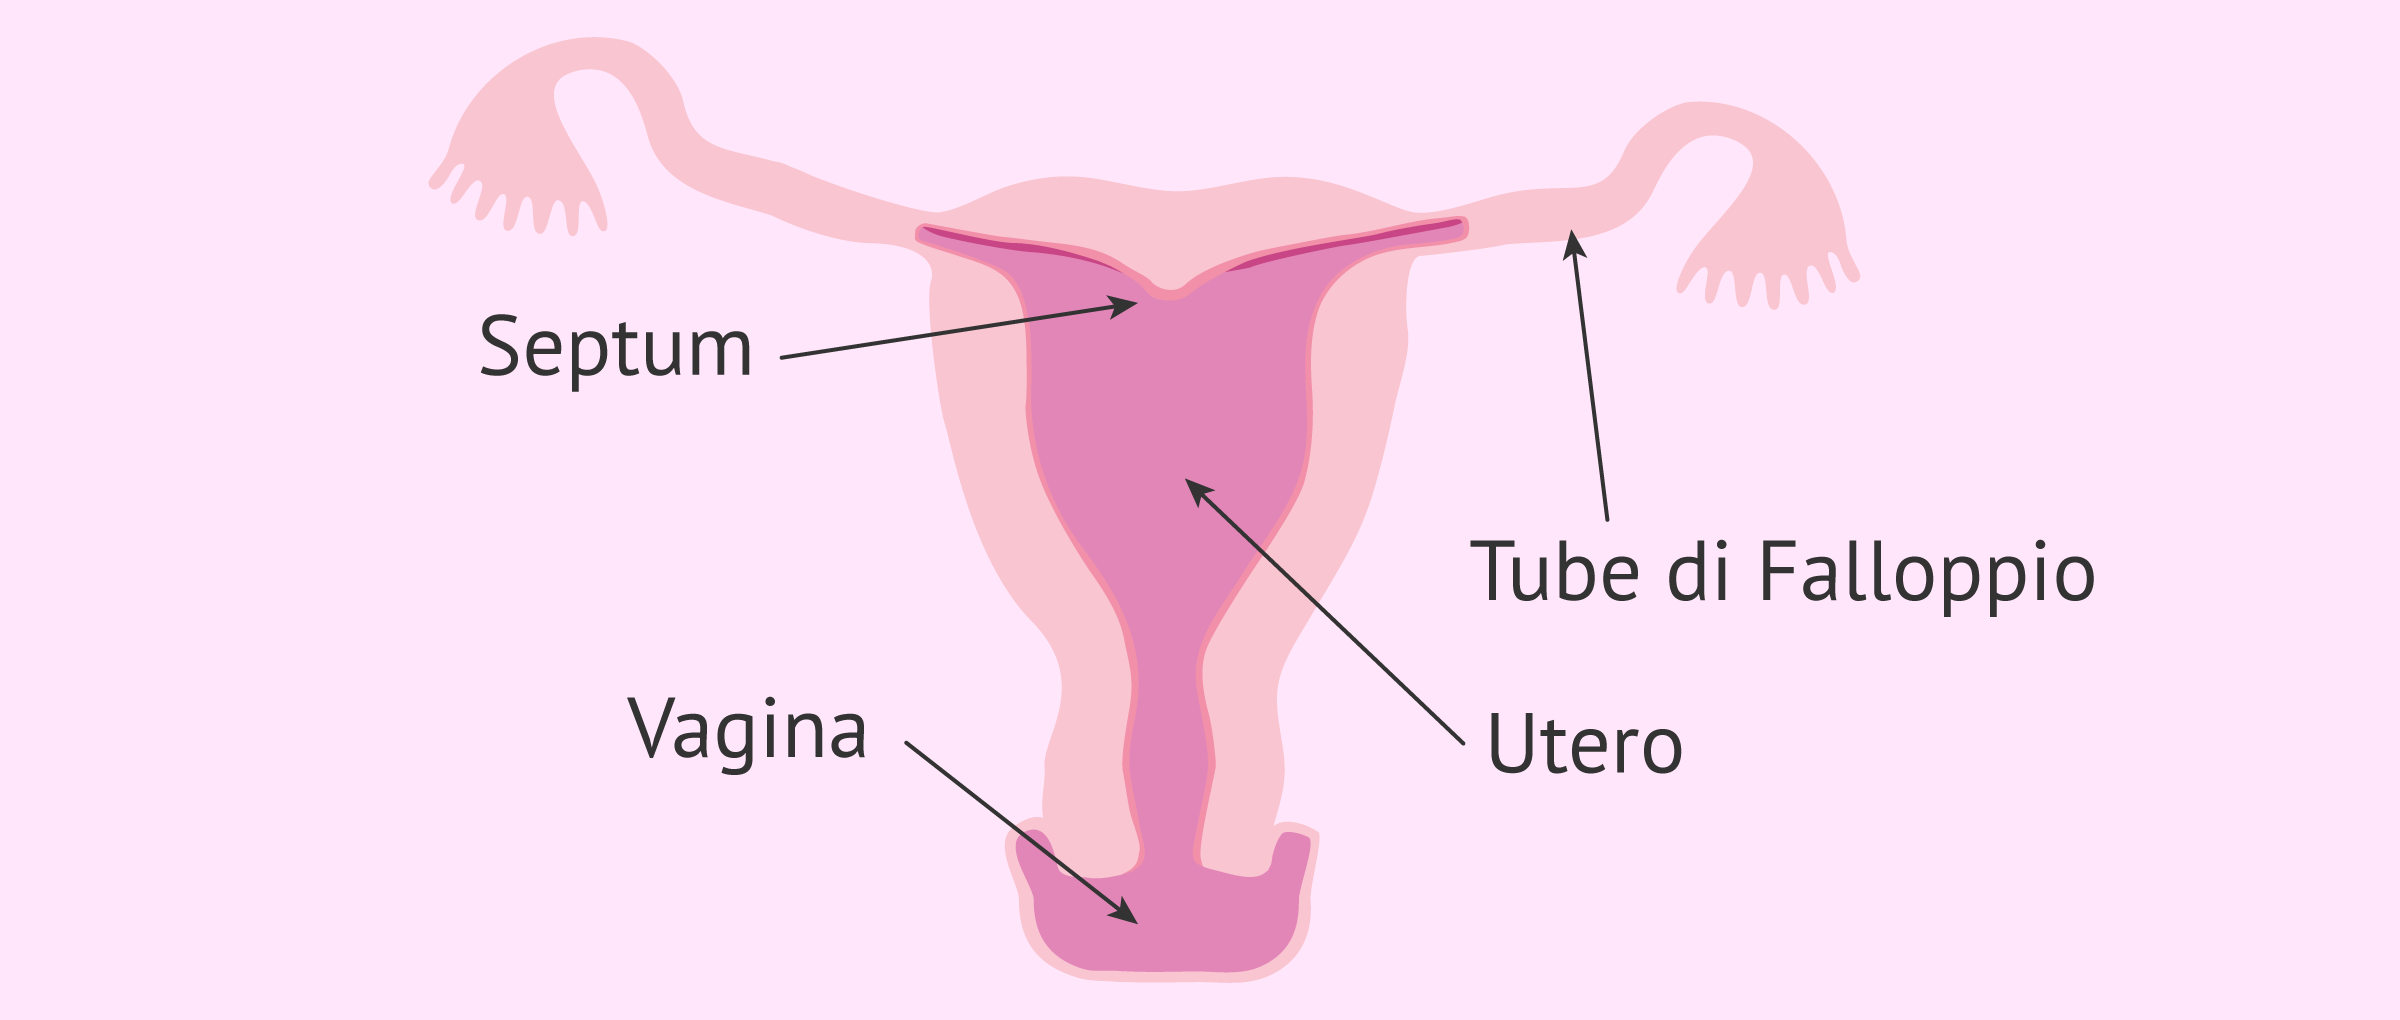 L'utero arcuato